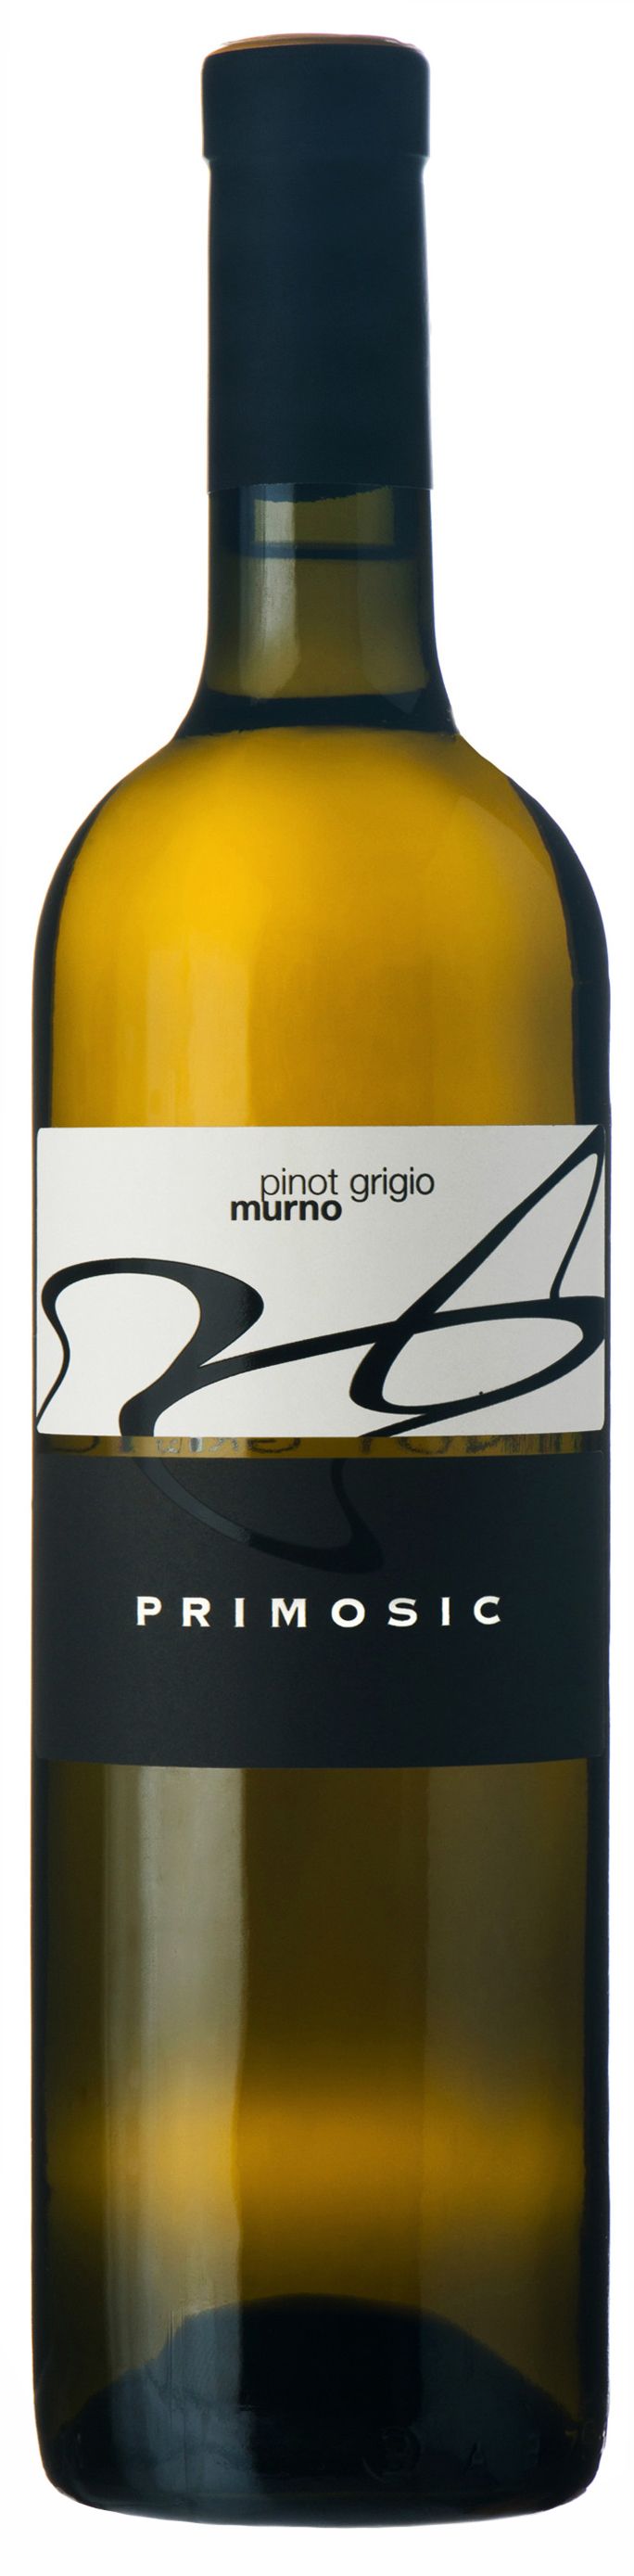 Primosic, Pinot Grigio Murno, 2012